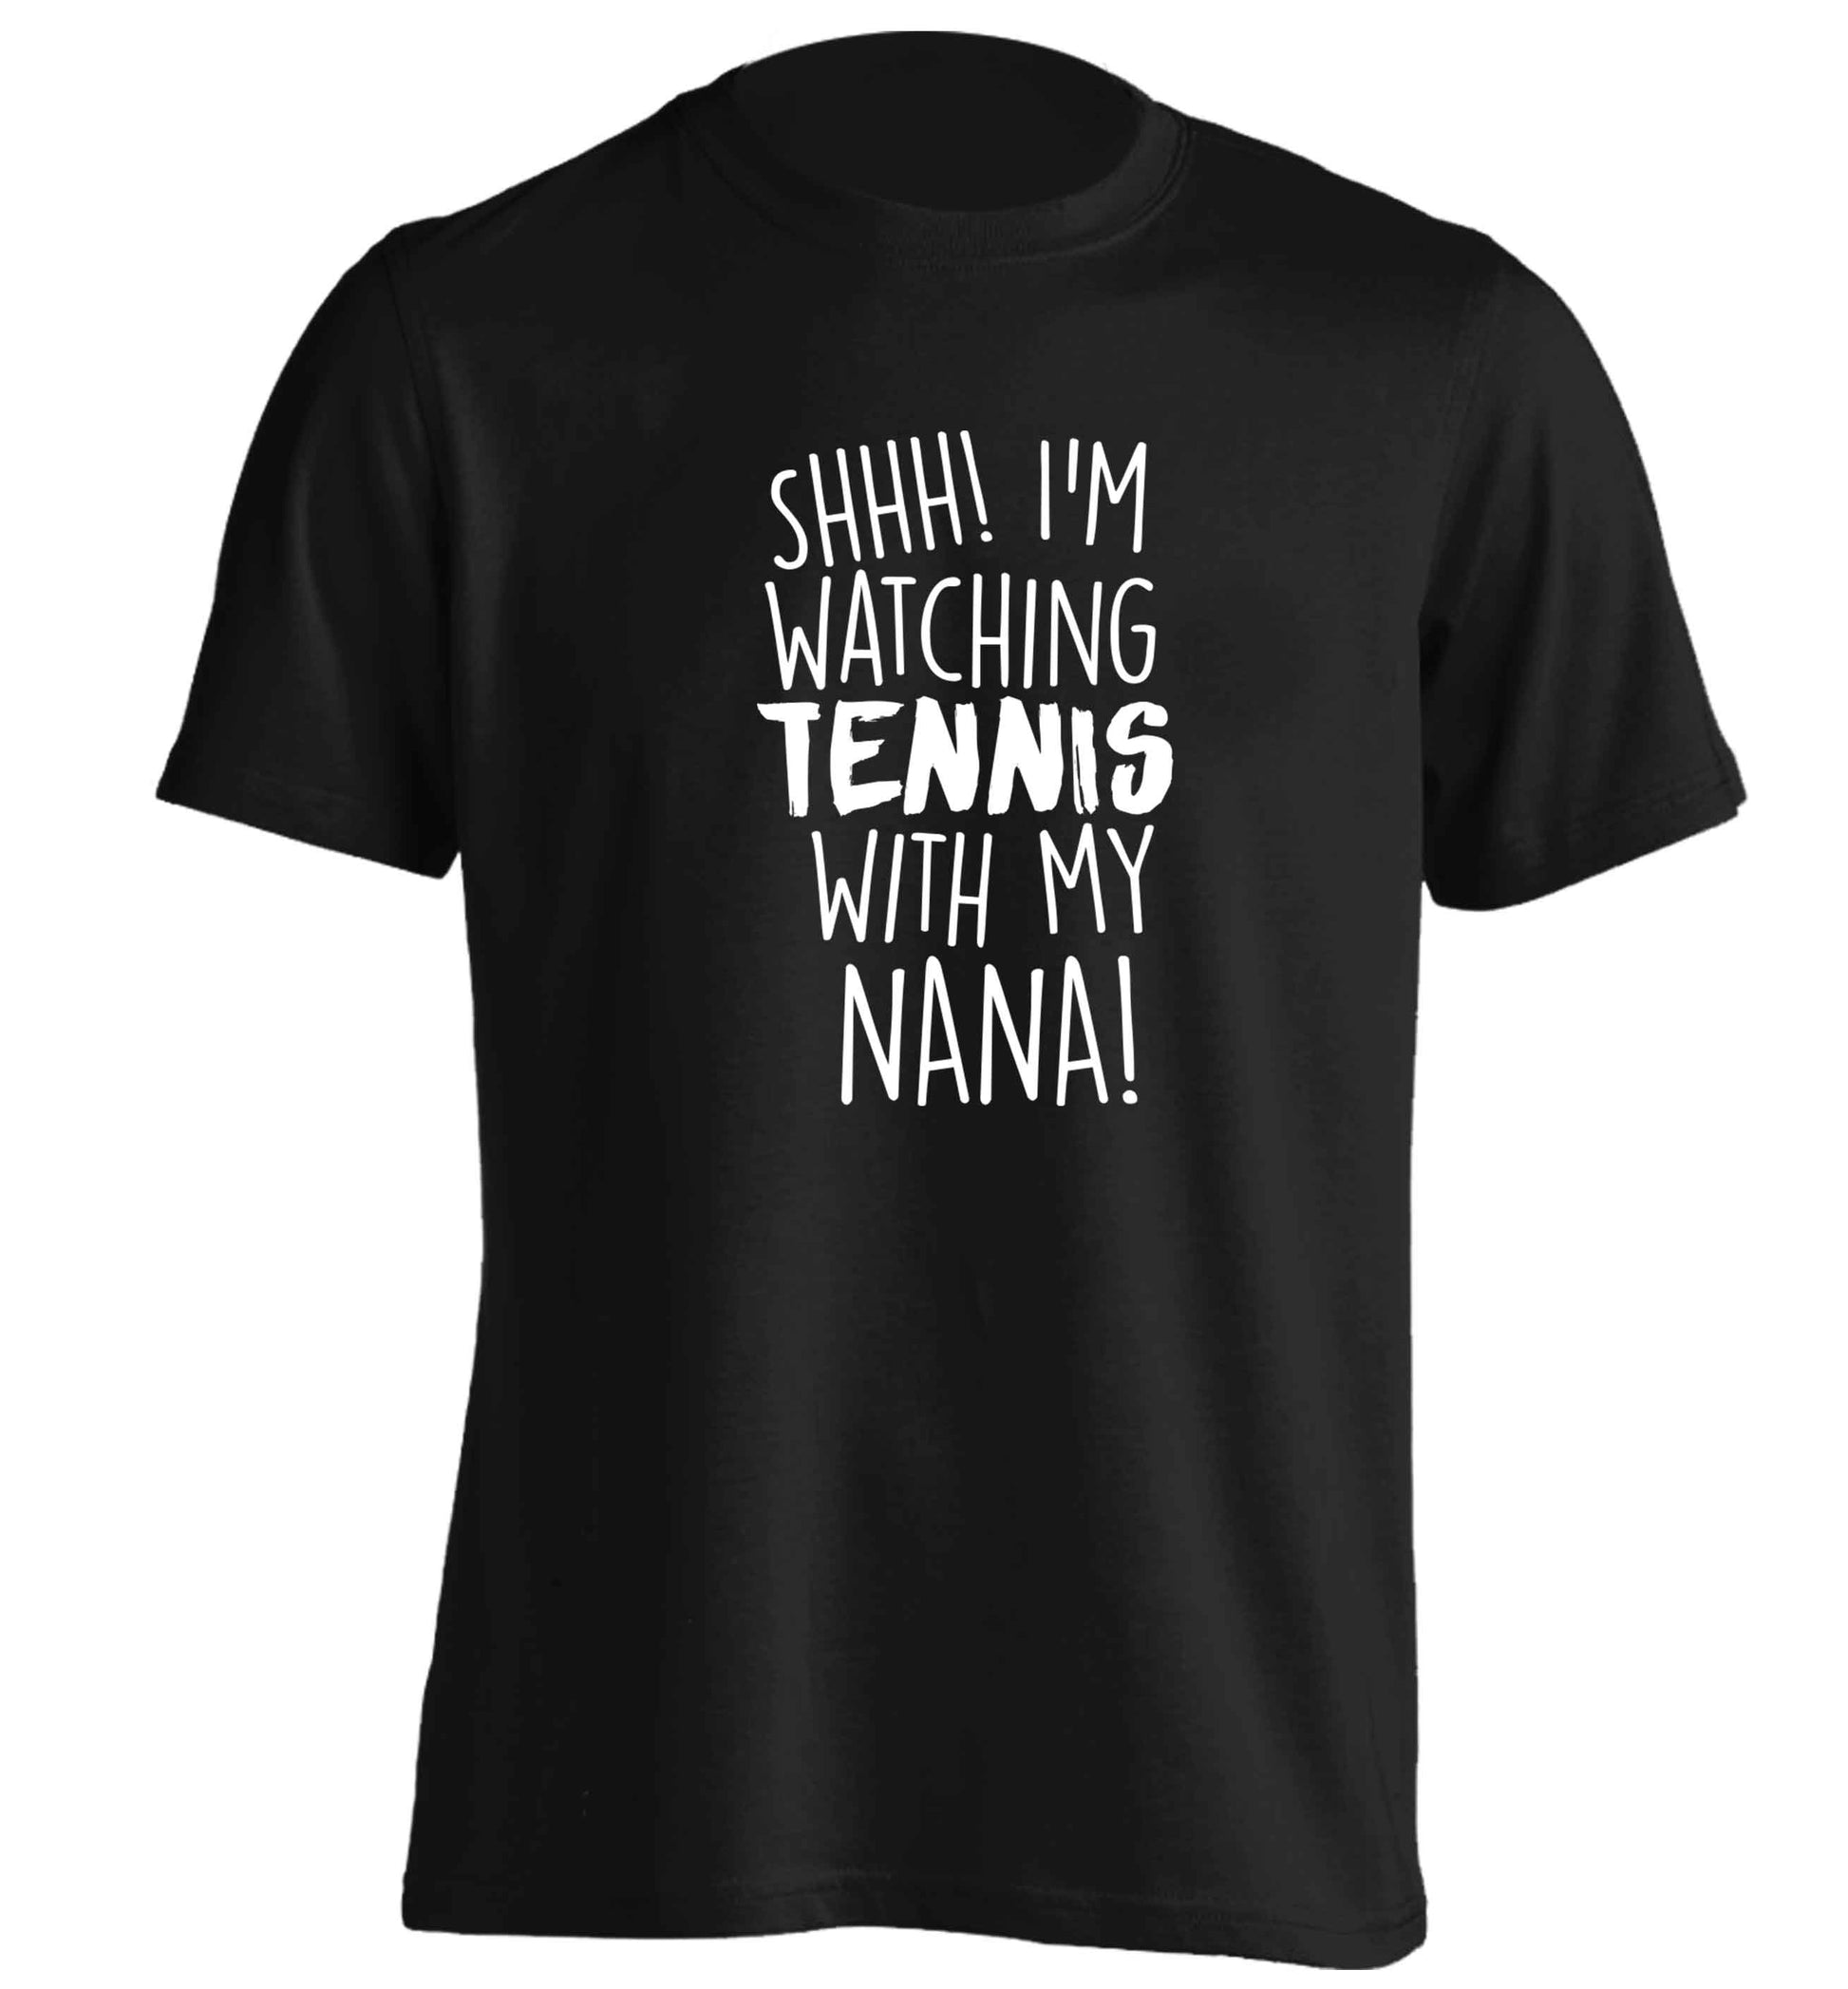 Shh! I'm watching tennis with my nana! adults unisex black Tshirt 2XL